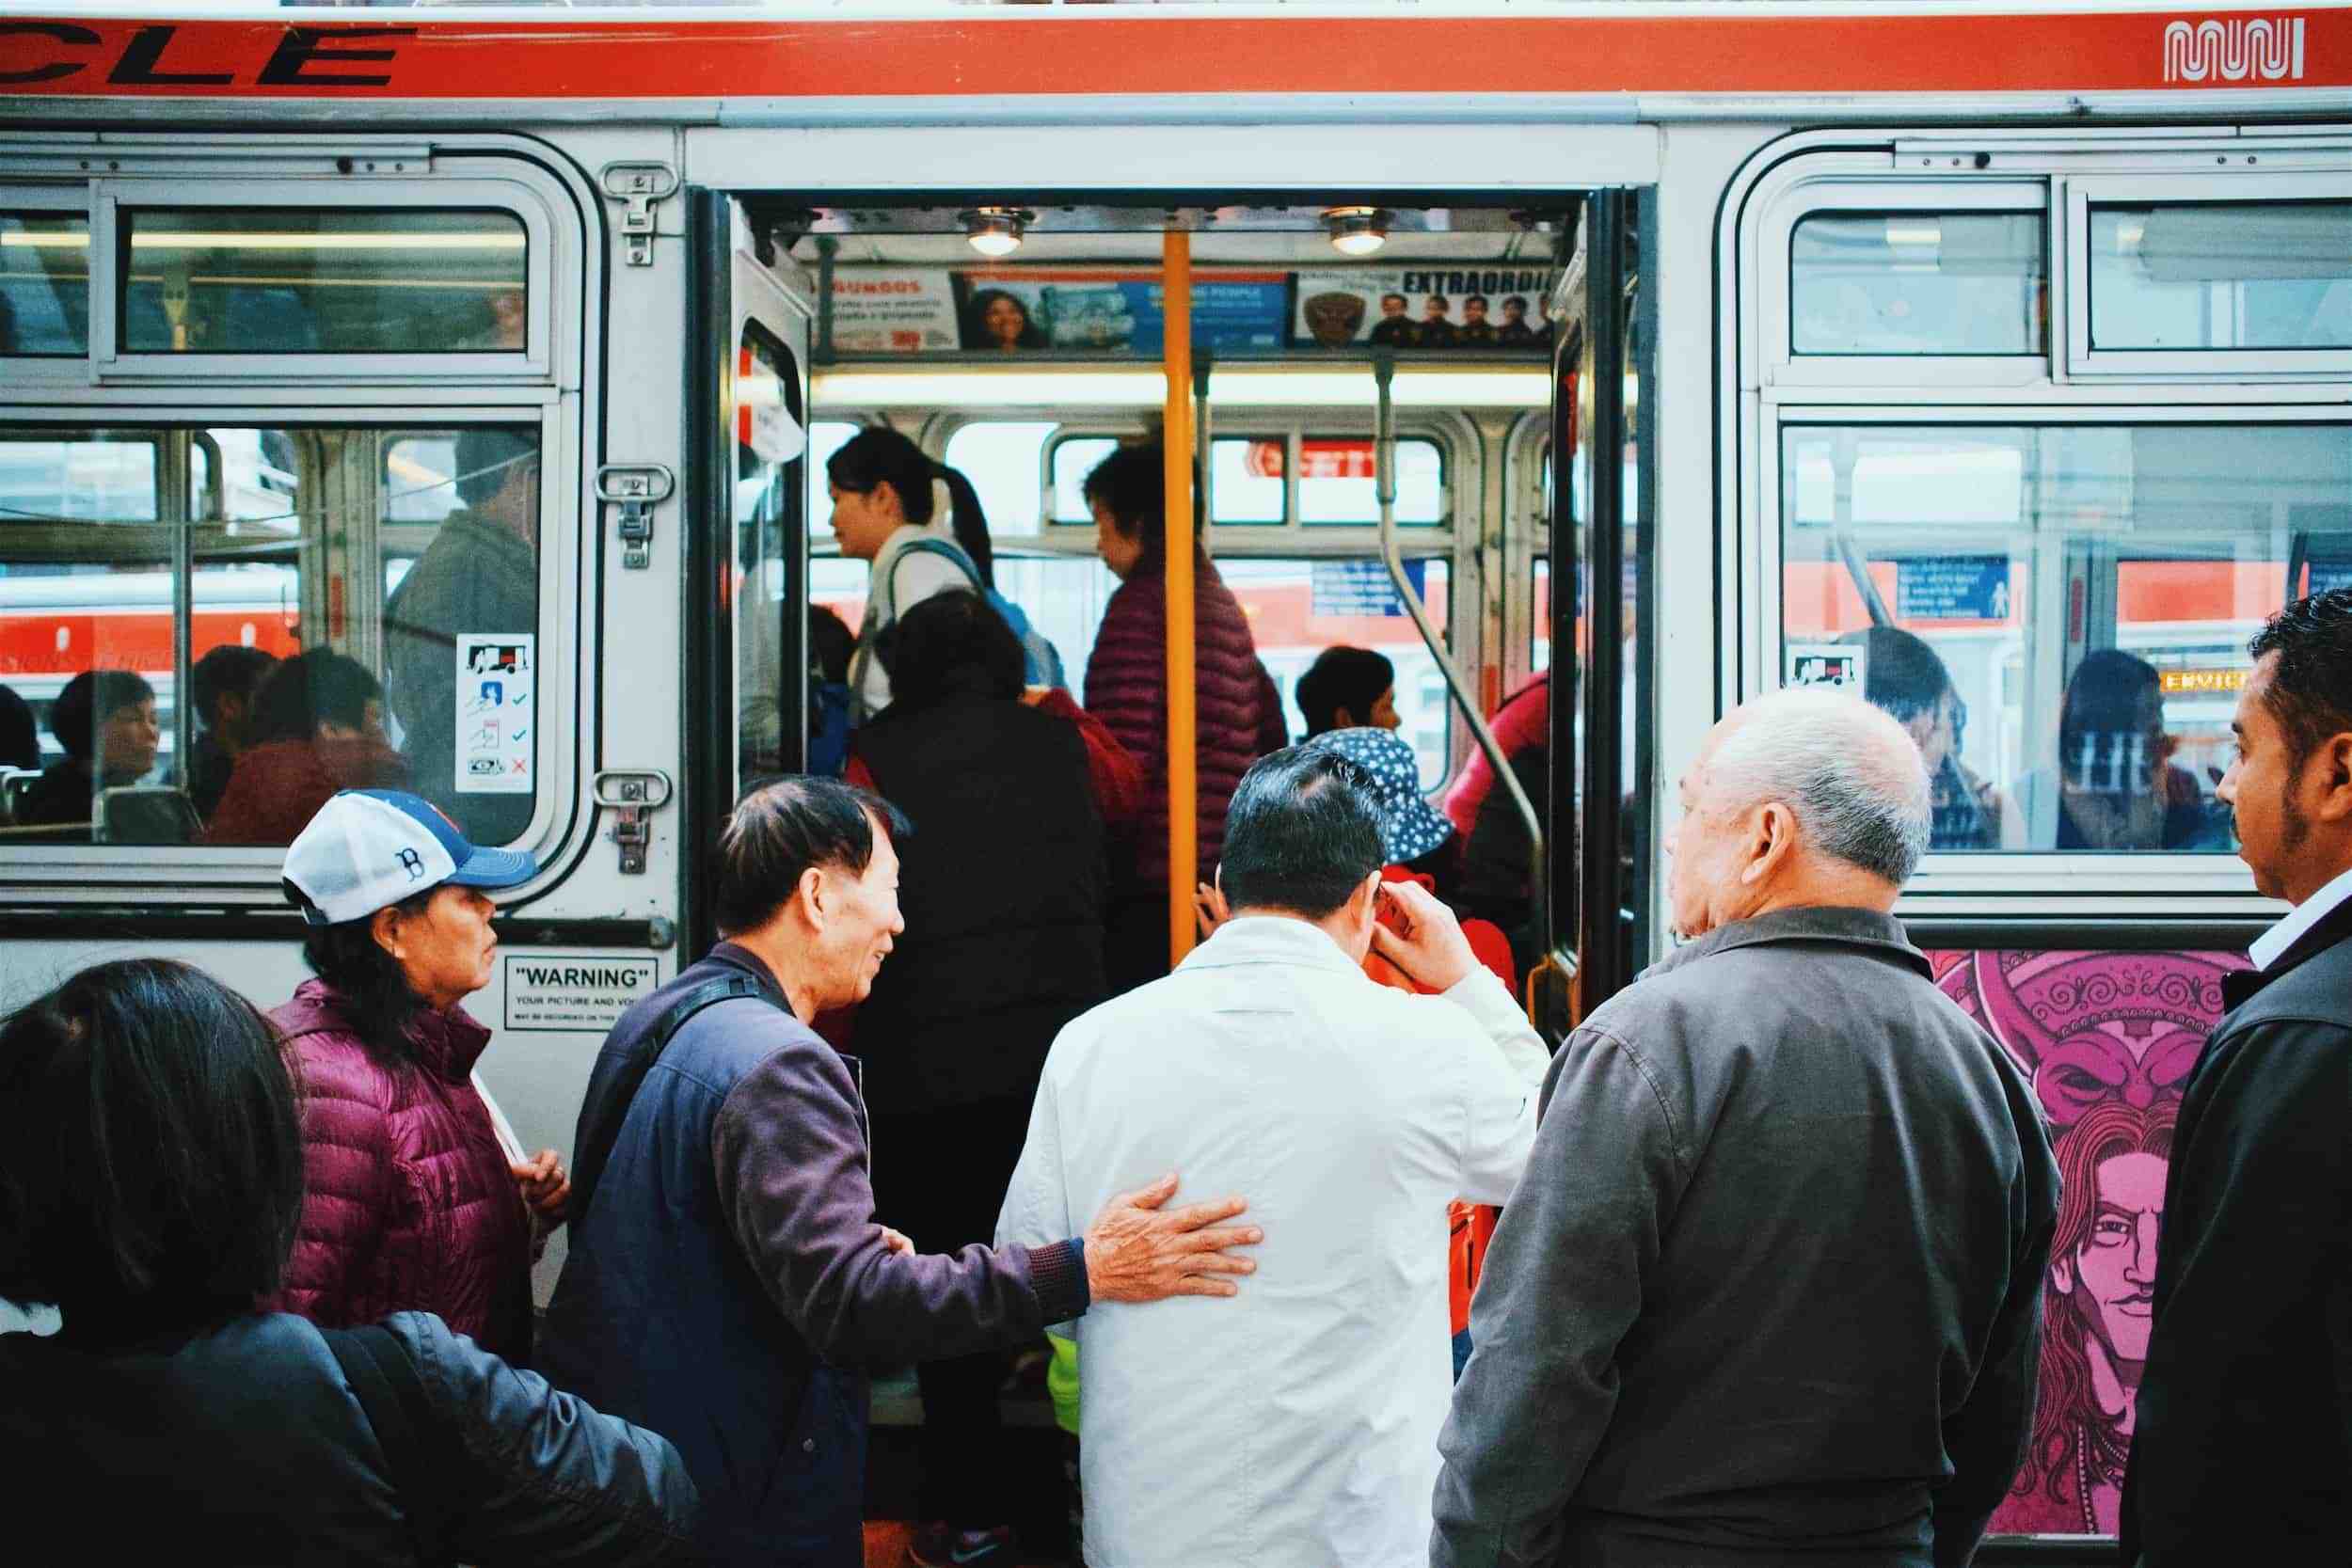 Mobilité : comment redonner de l'attractivité aux transports publics ?